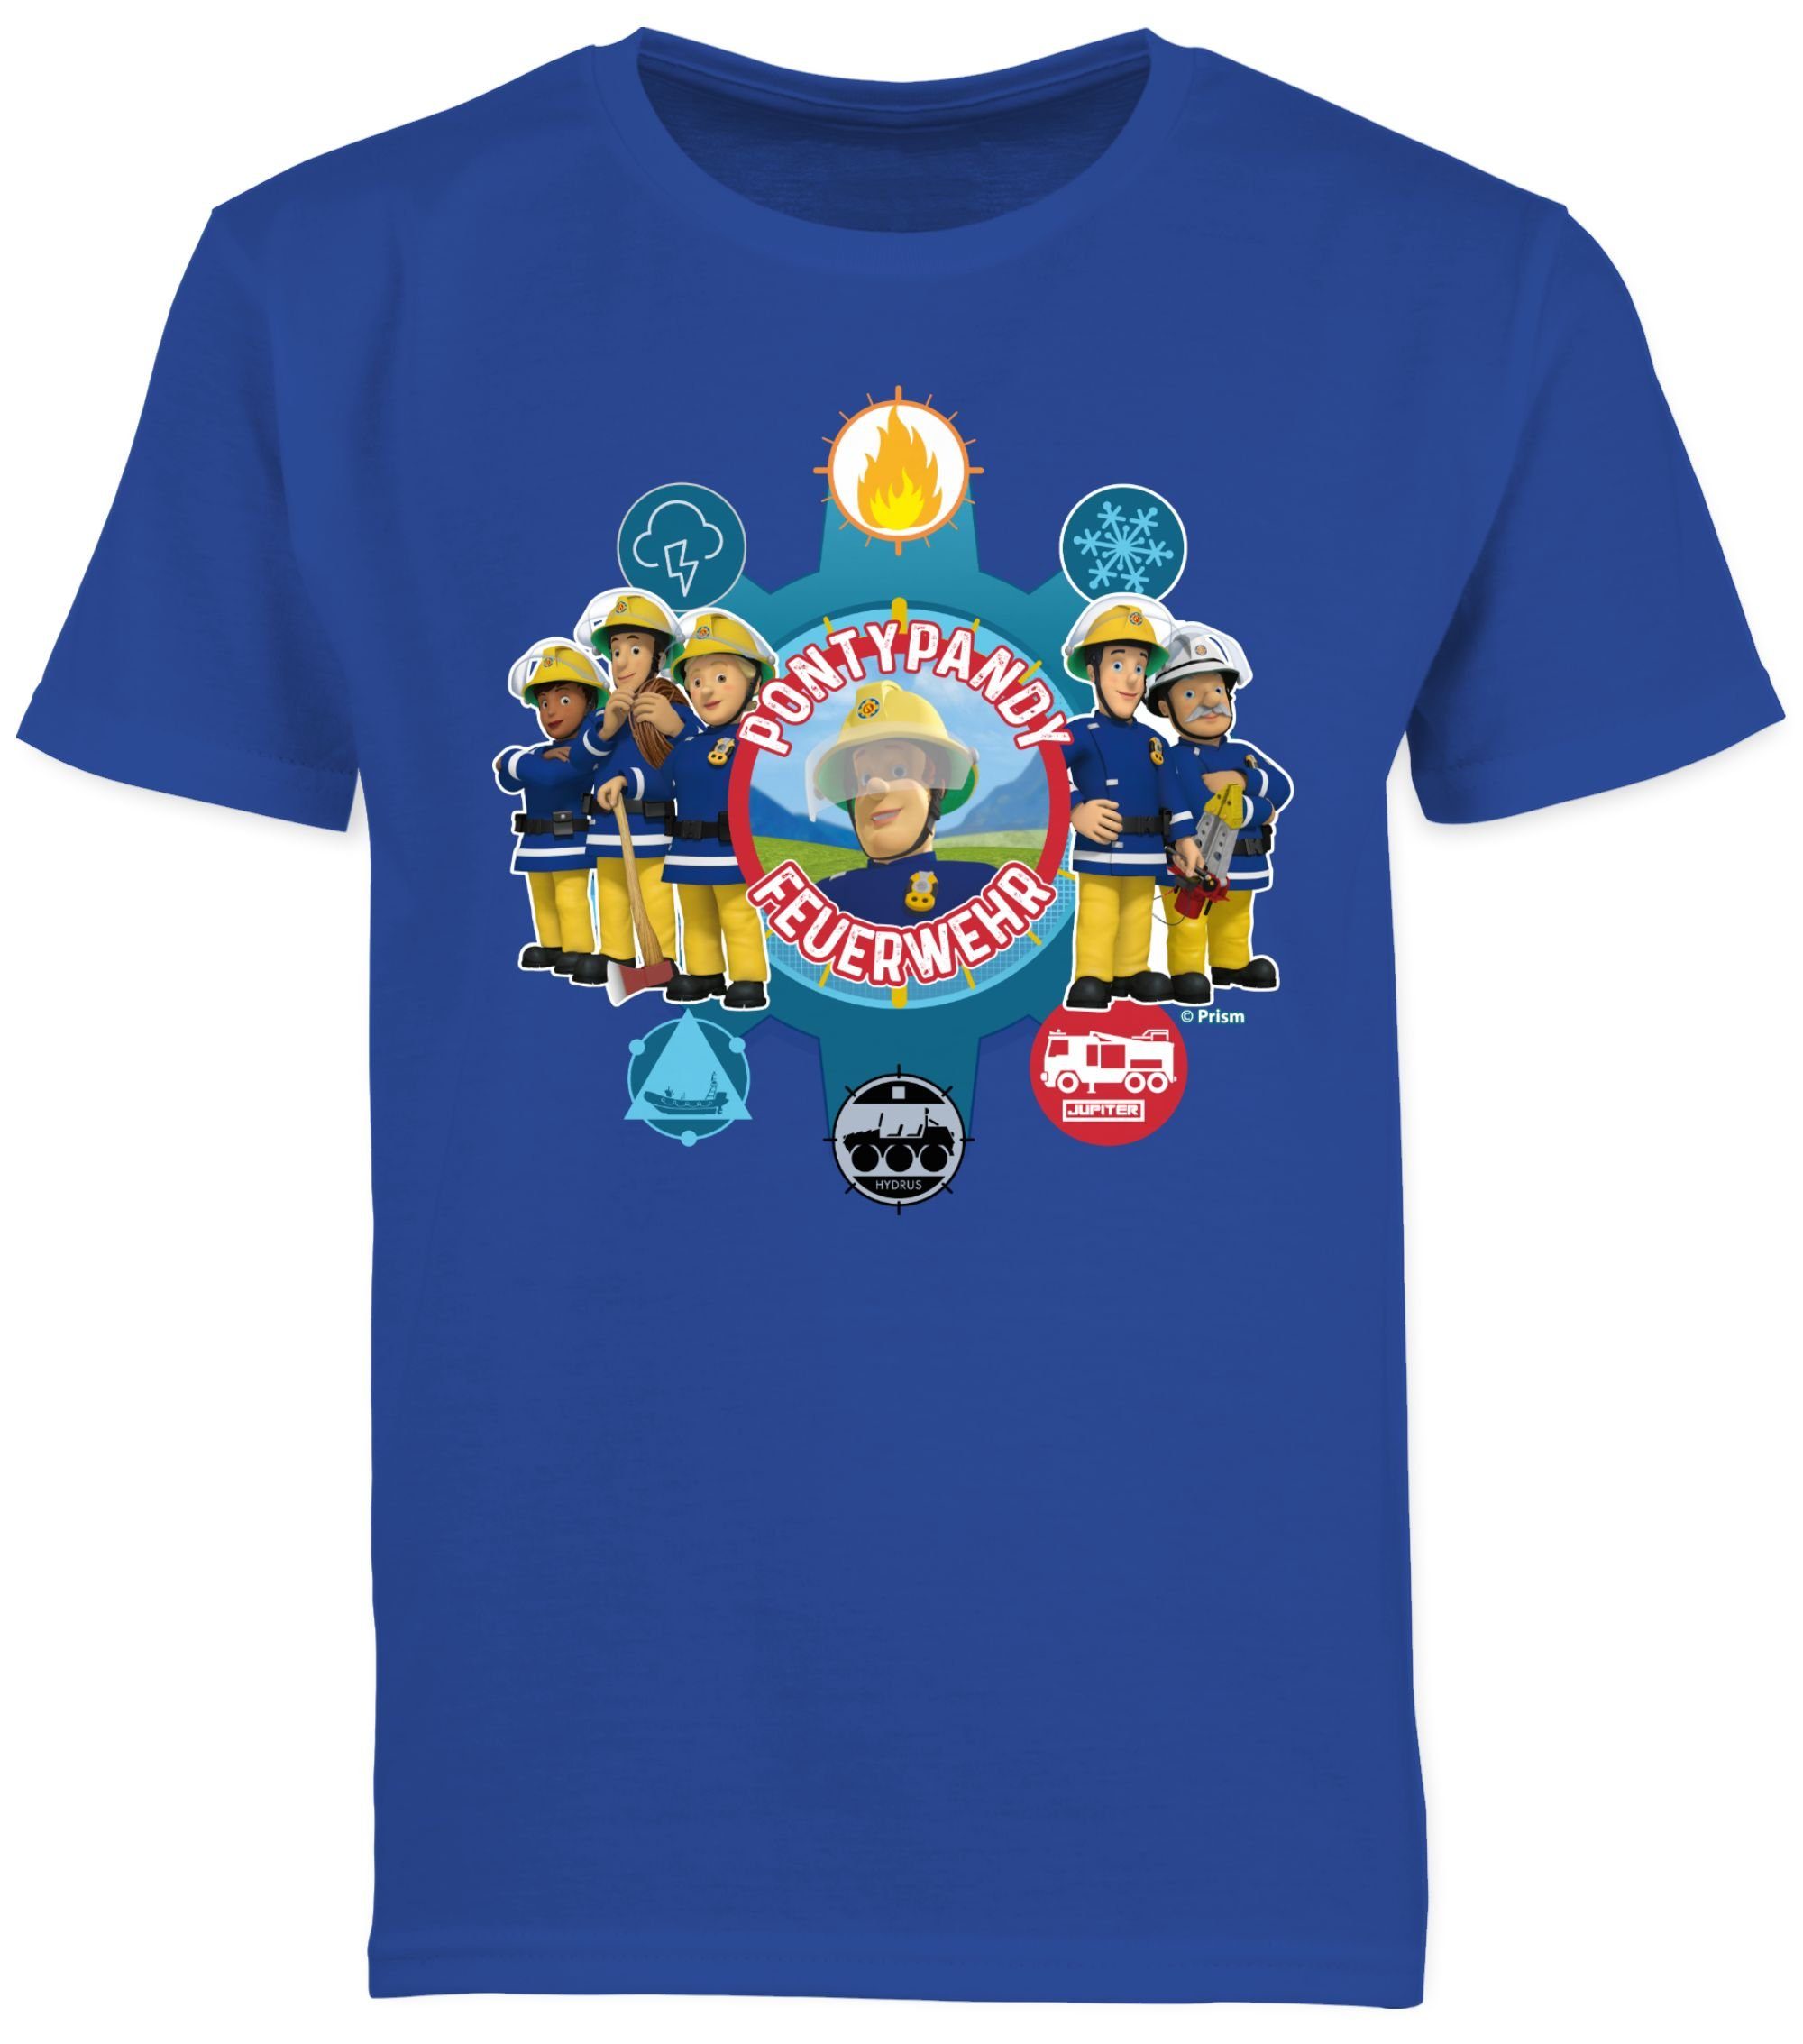 Sam Pontypandy Feuerwehrmann T-Shirt Royalblau Jungen Shirtracer Feuerwehr 01